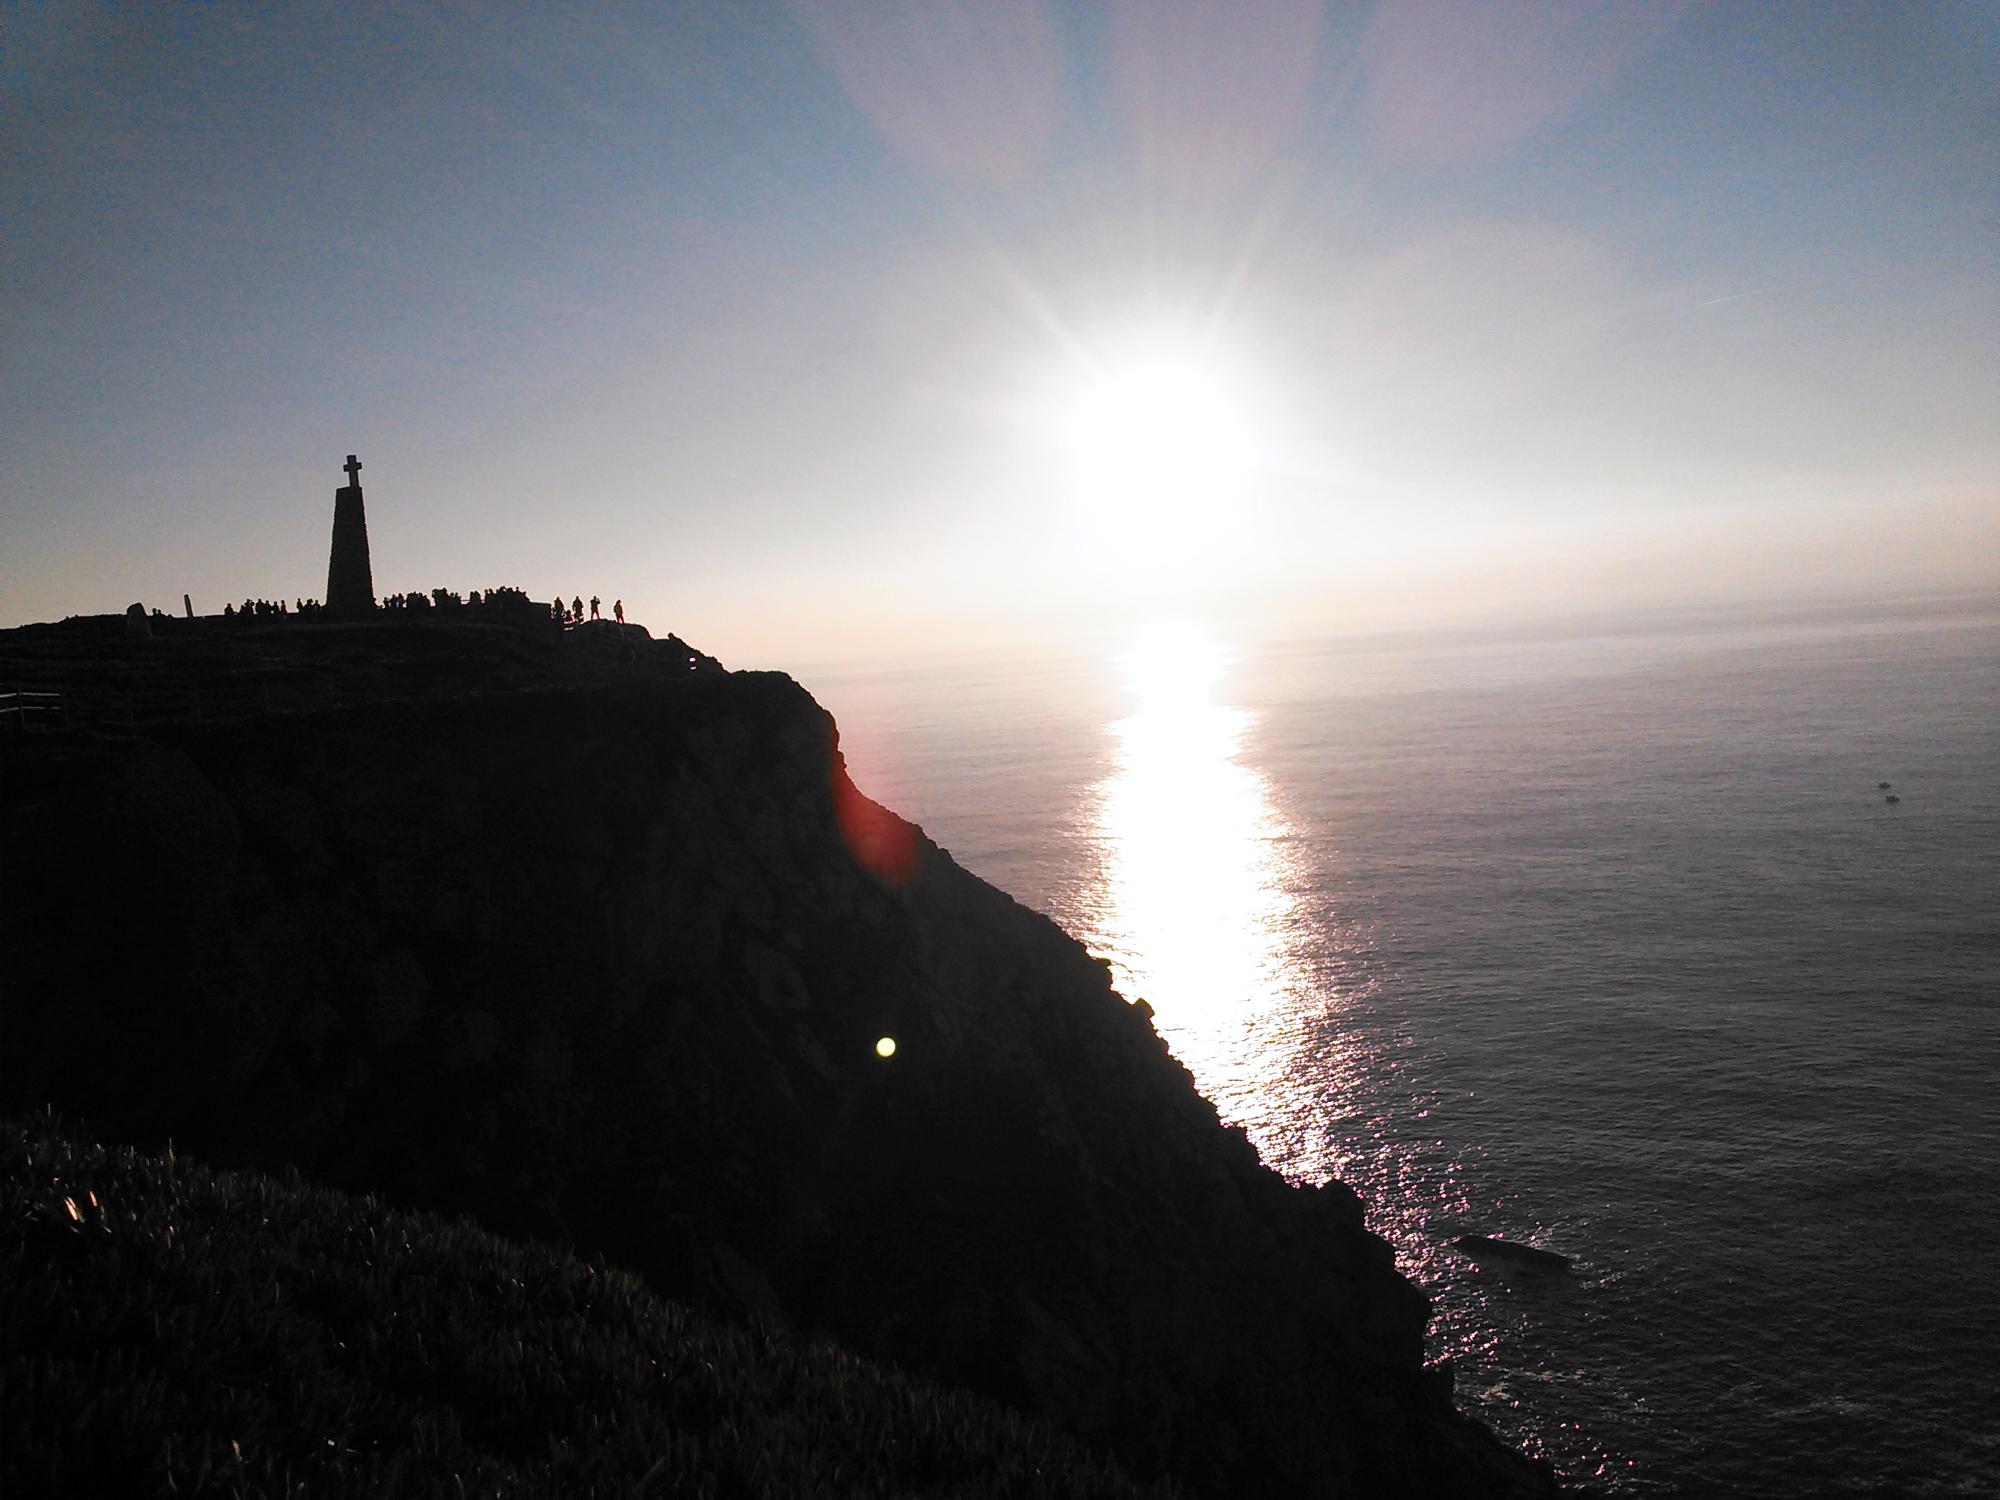 ポルトガルに憧れるきっかけとなったという、ユーラシア大陸の最西端・ロカ岬。「岬にある石碑には、『ここに地果て、海始まる』という詩が刻まれています」